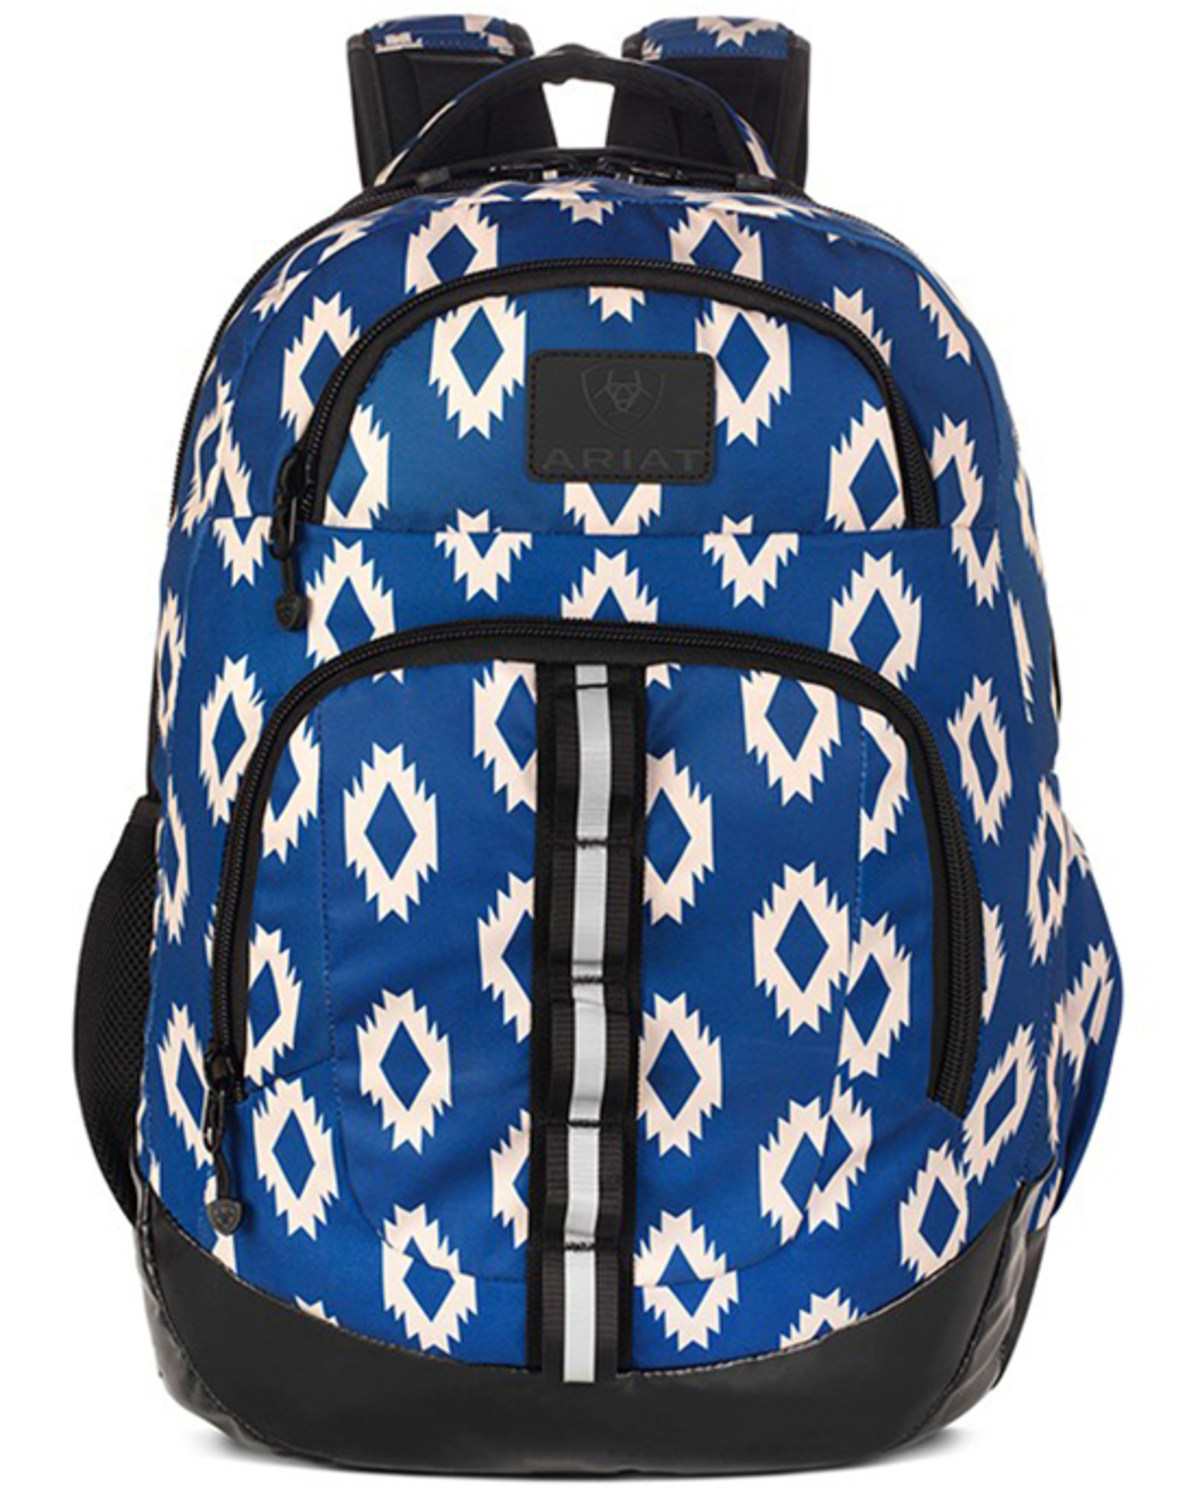 Ariat Southwestern Adjustable Strap Backpack